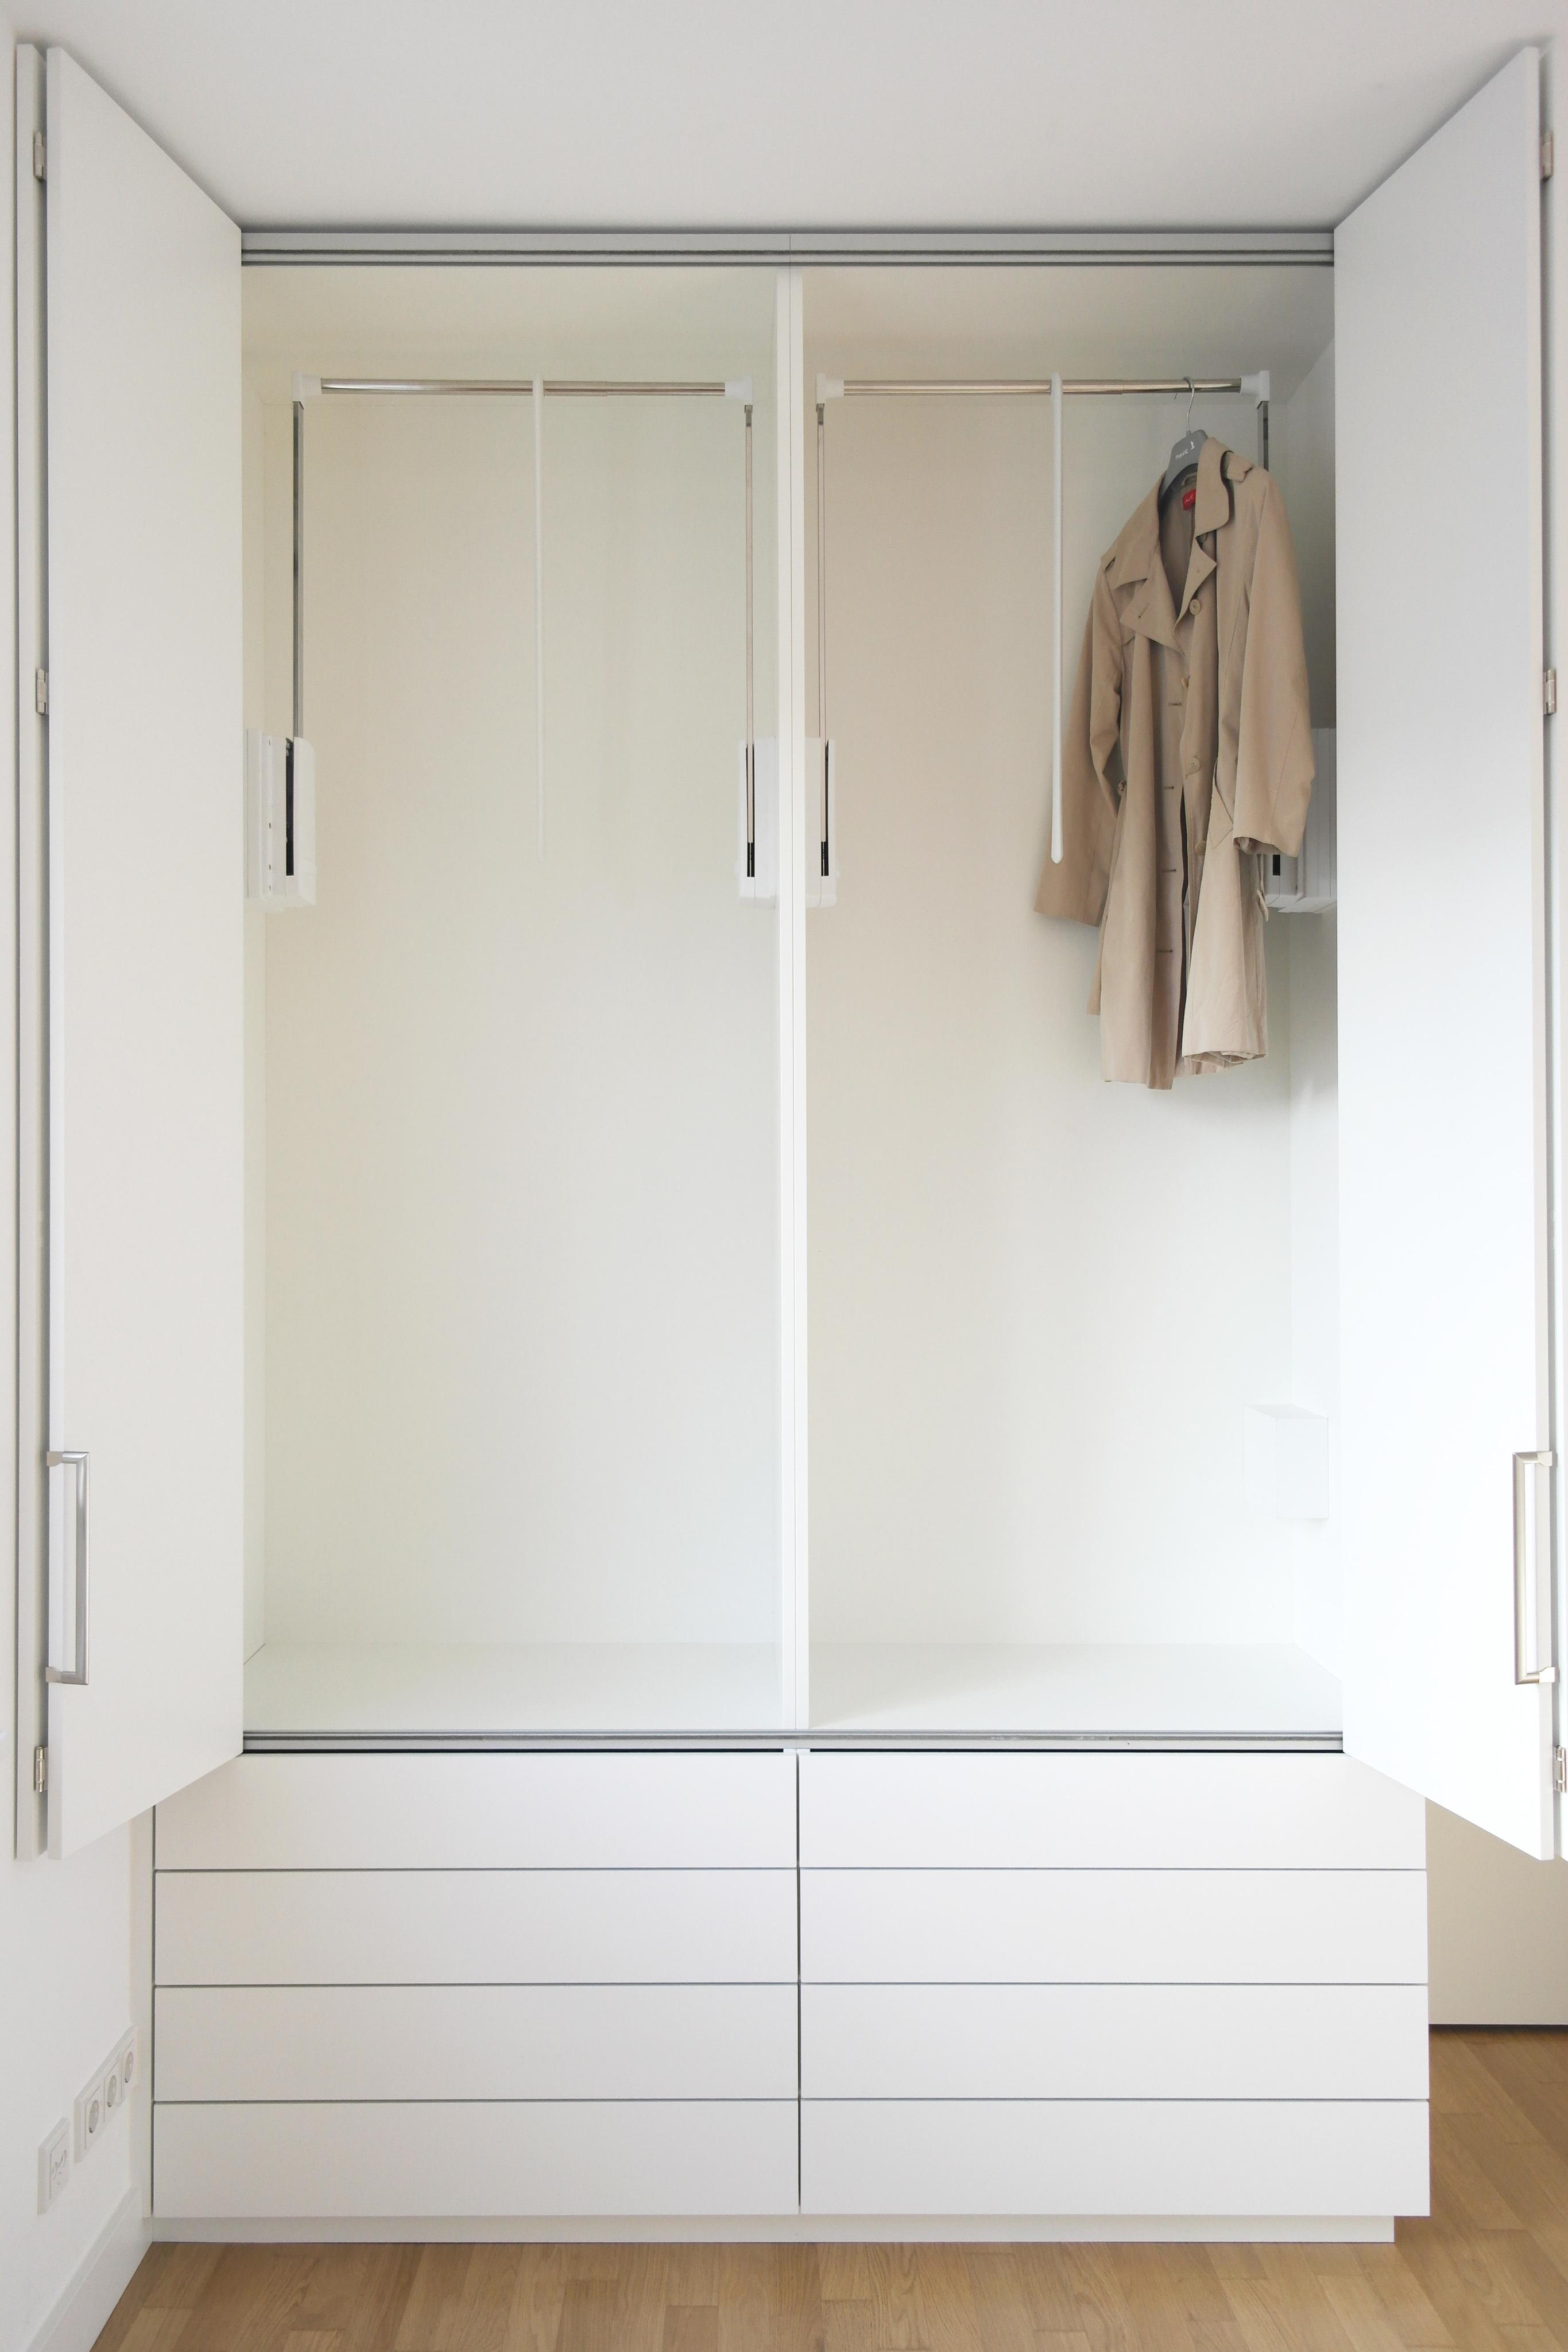 GANTZ Kleiderschrank mit Faltschiebetüren und Kleiderliften #faltschiebetür #aufbewahrung #kleiderschrank ©Gantz